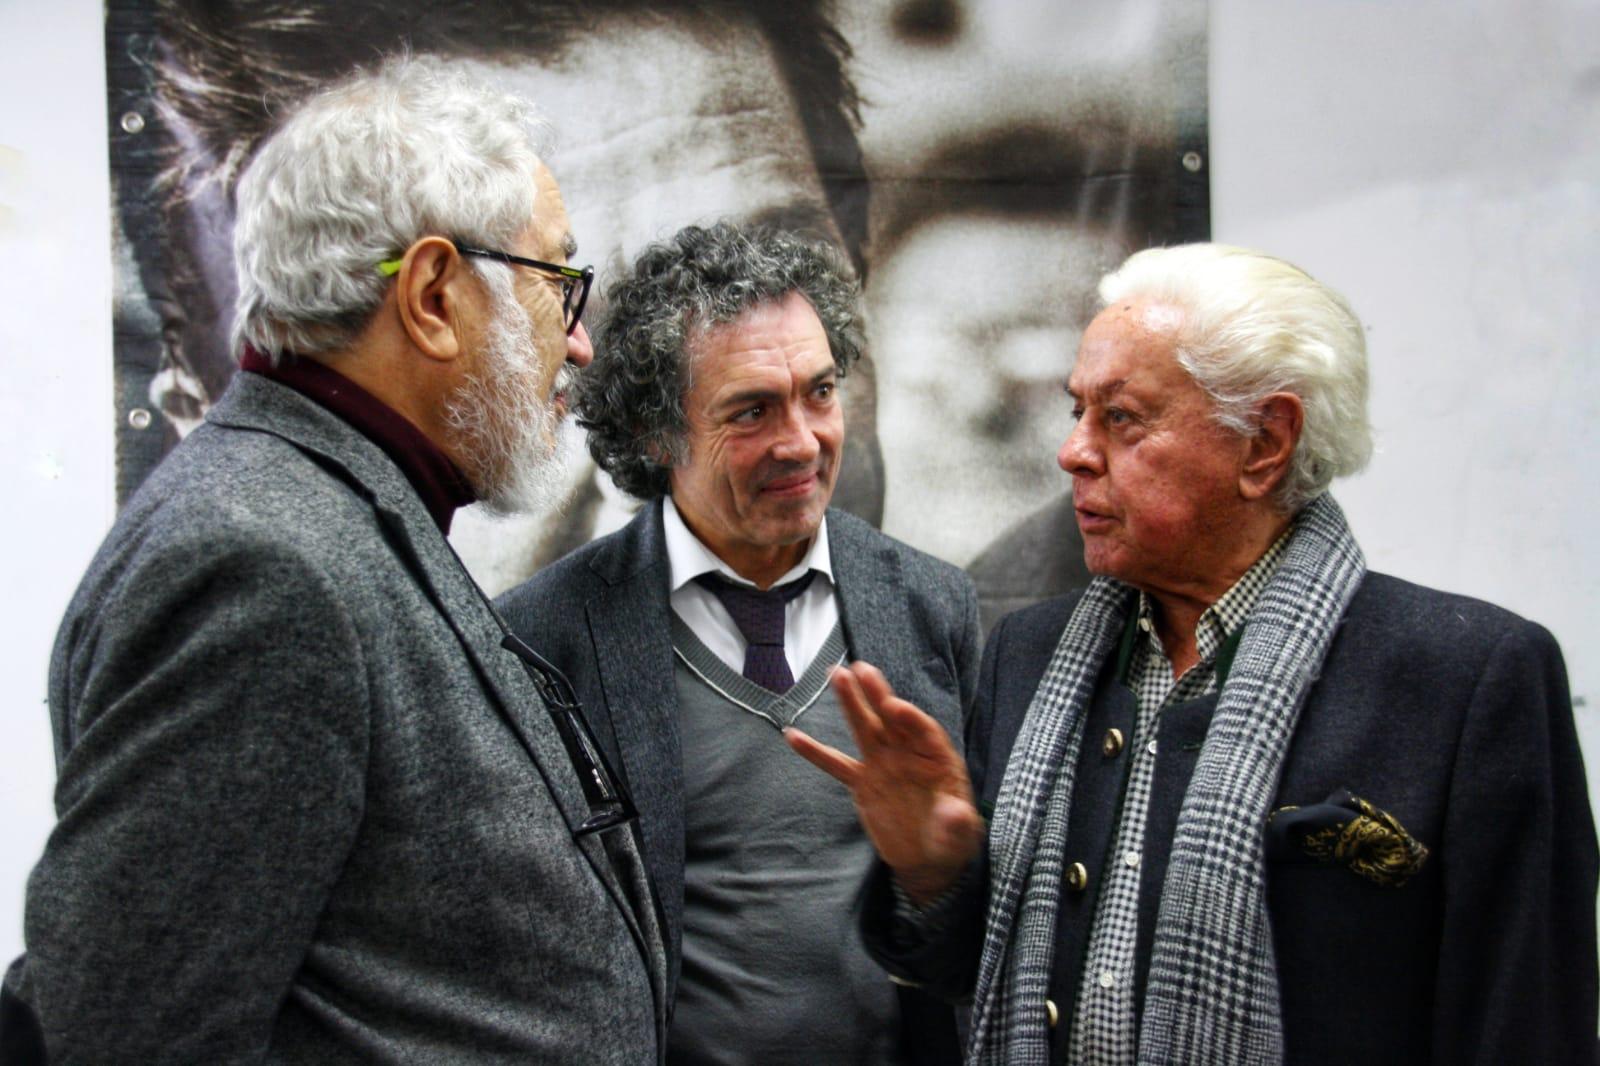 Antonio Camaró junto a Roman Reyes rector de la universidad Europea Emui y Roberto Capucci modisto y diseñador de las películas de Pasolini.